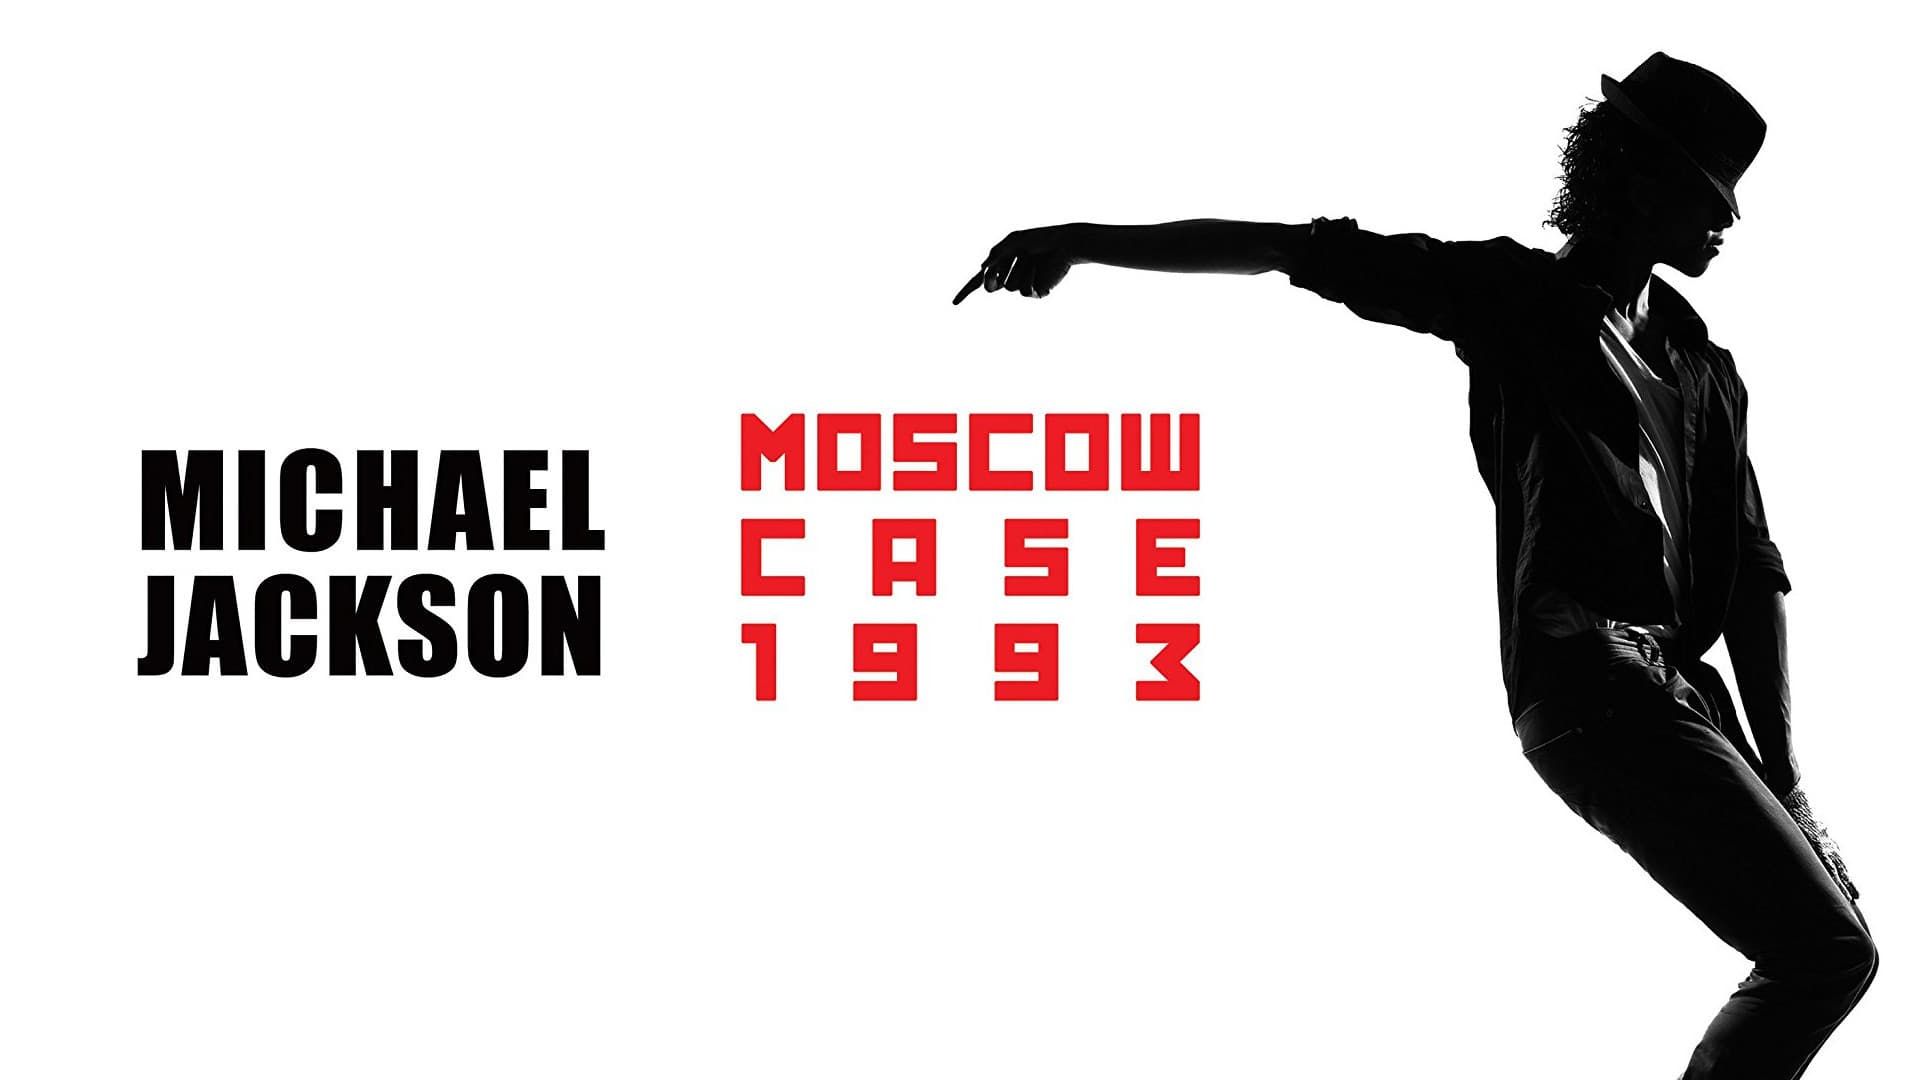 Cubierta de Michael Jackson: Moscow Case 1993